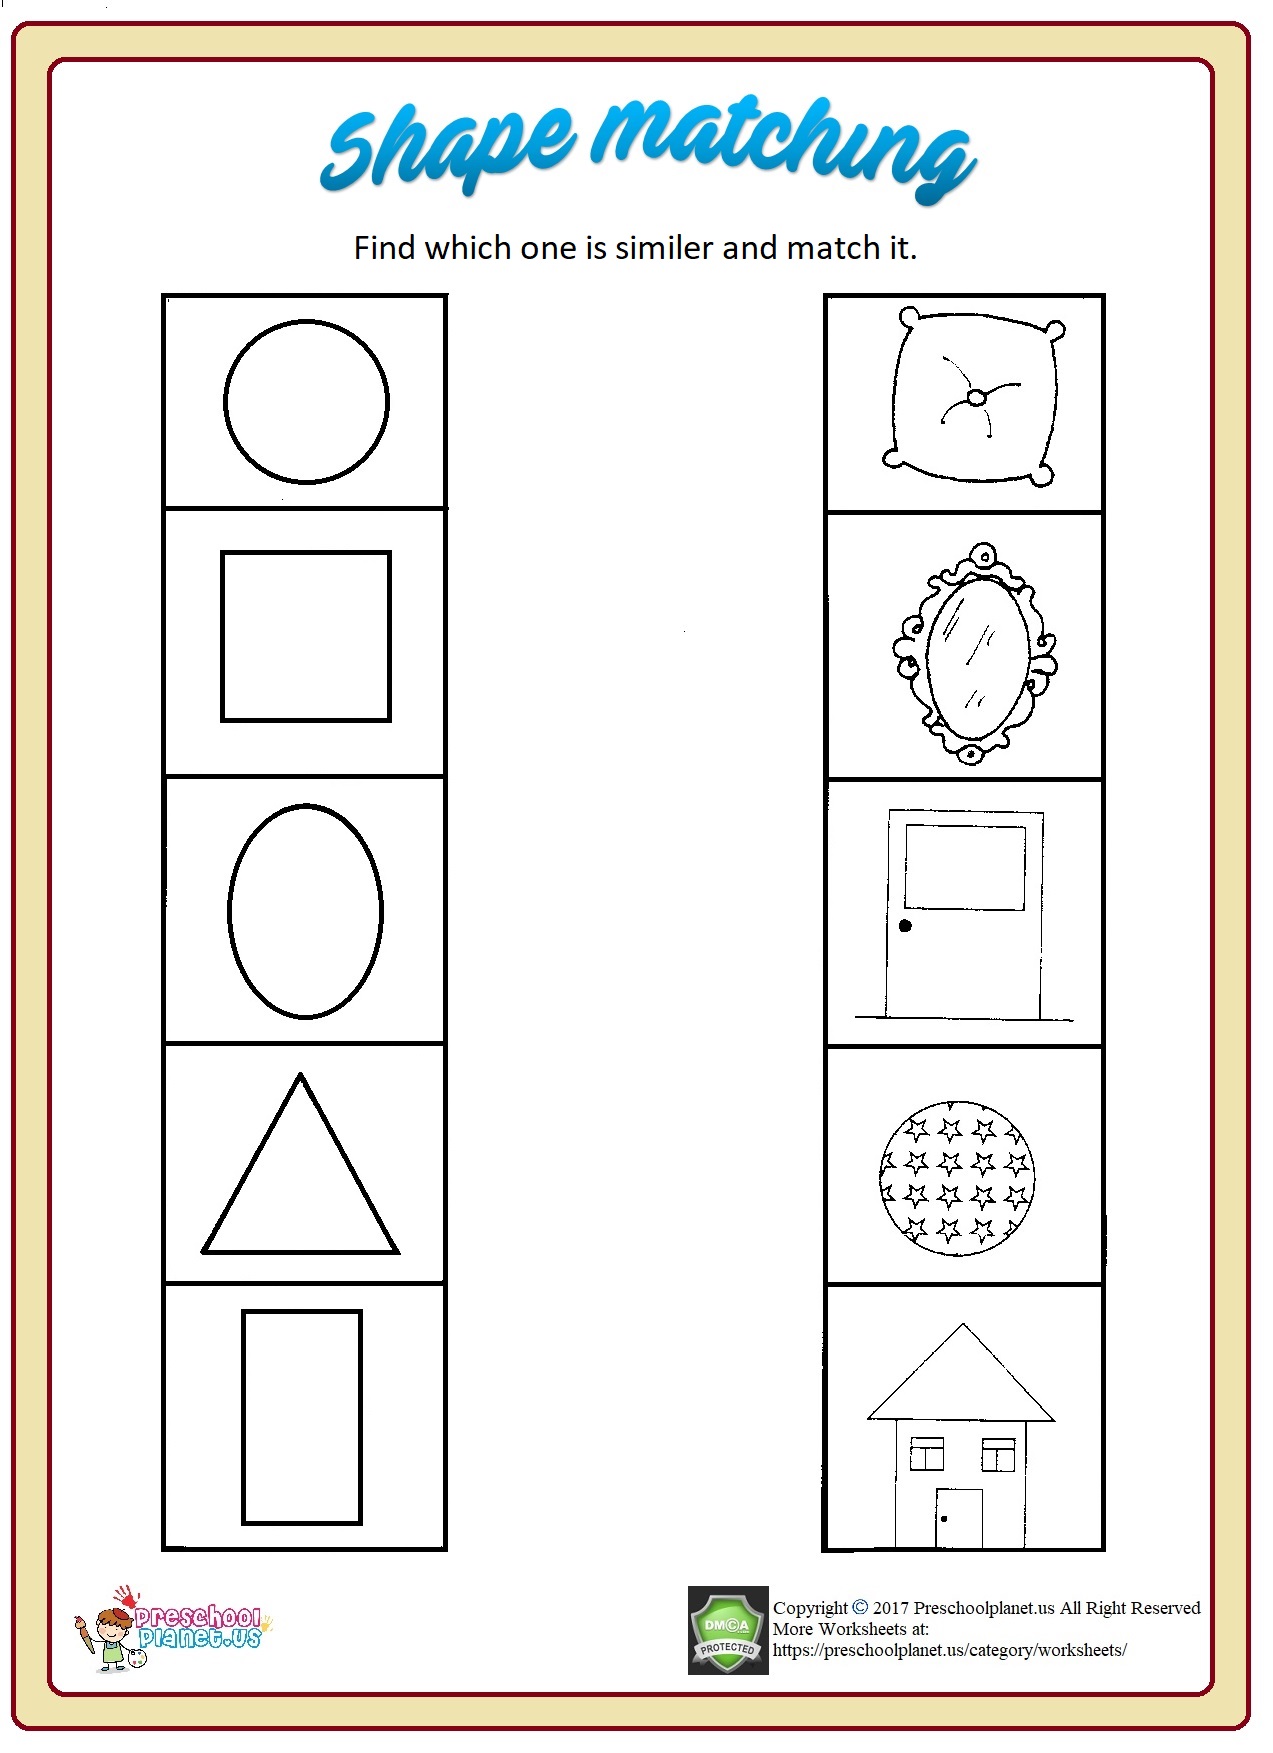 shape matching worksheet preschoolplanet